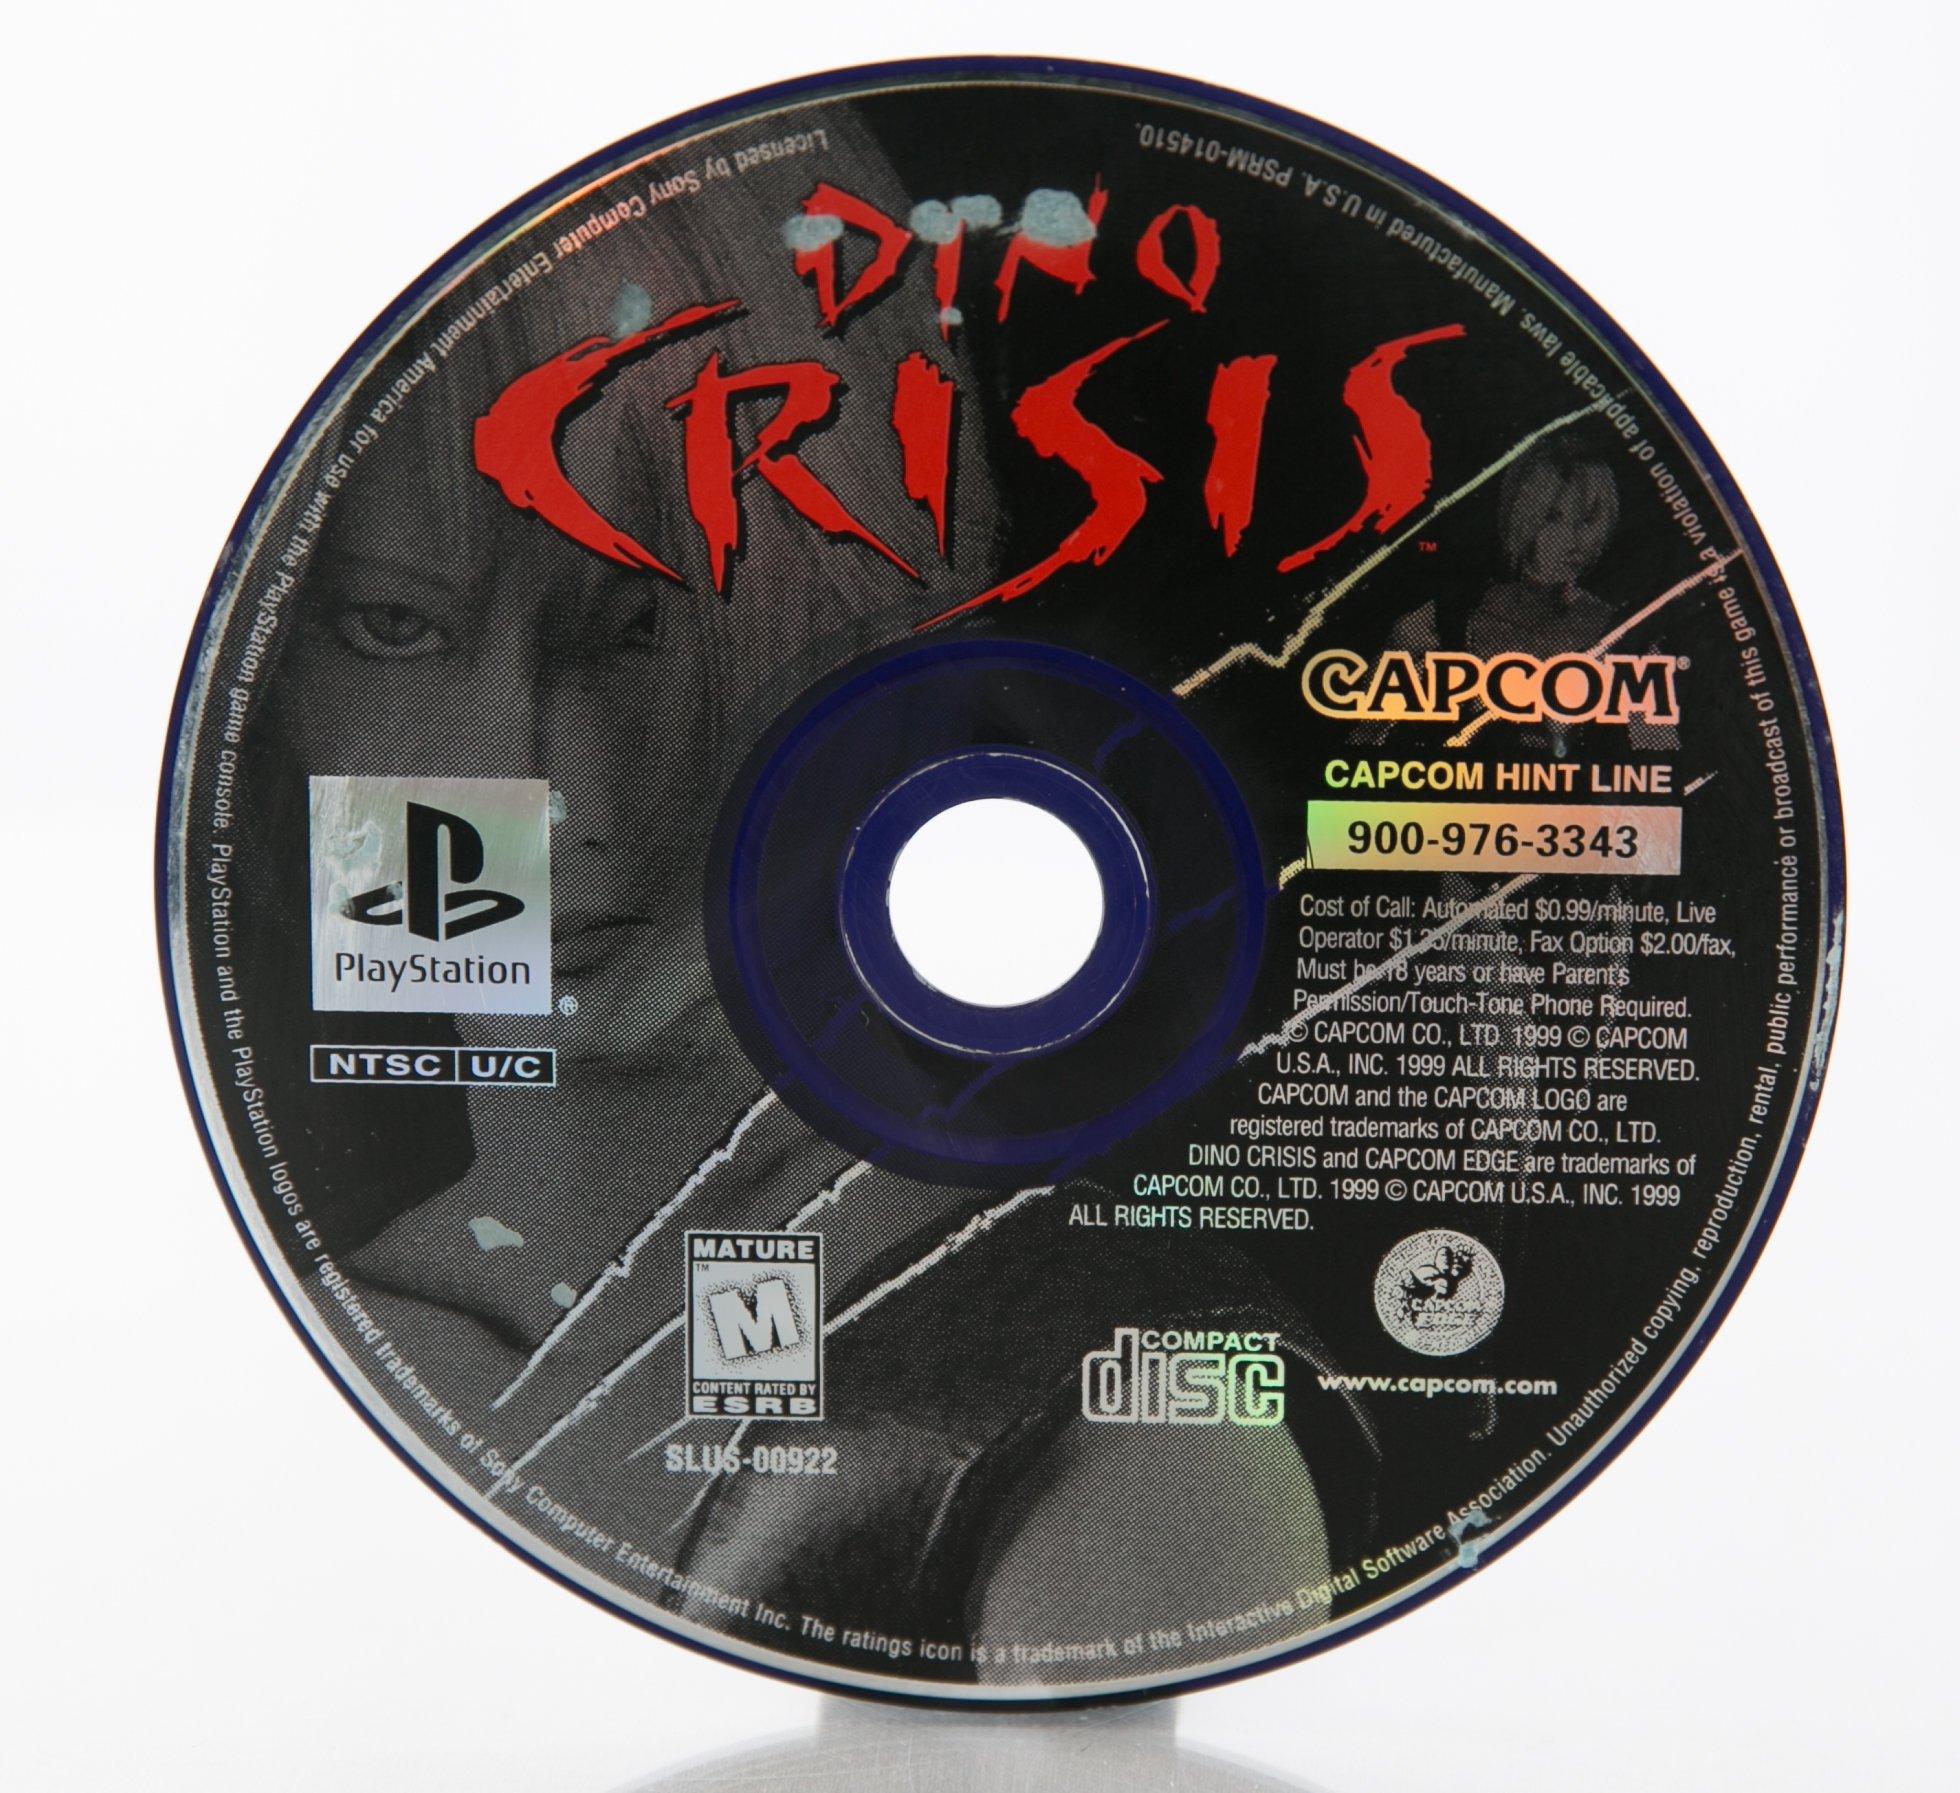 Dino Crisis será oferecido no catálogo de jogos de PS1 para PS4 e PS5 - PSX  Brasil